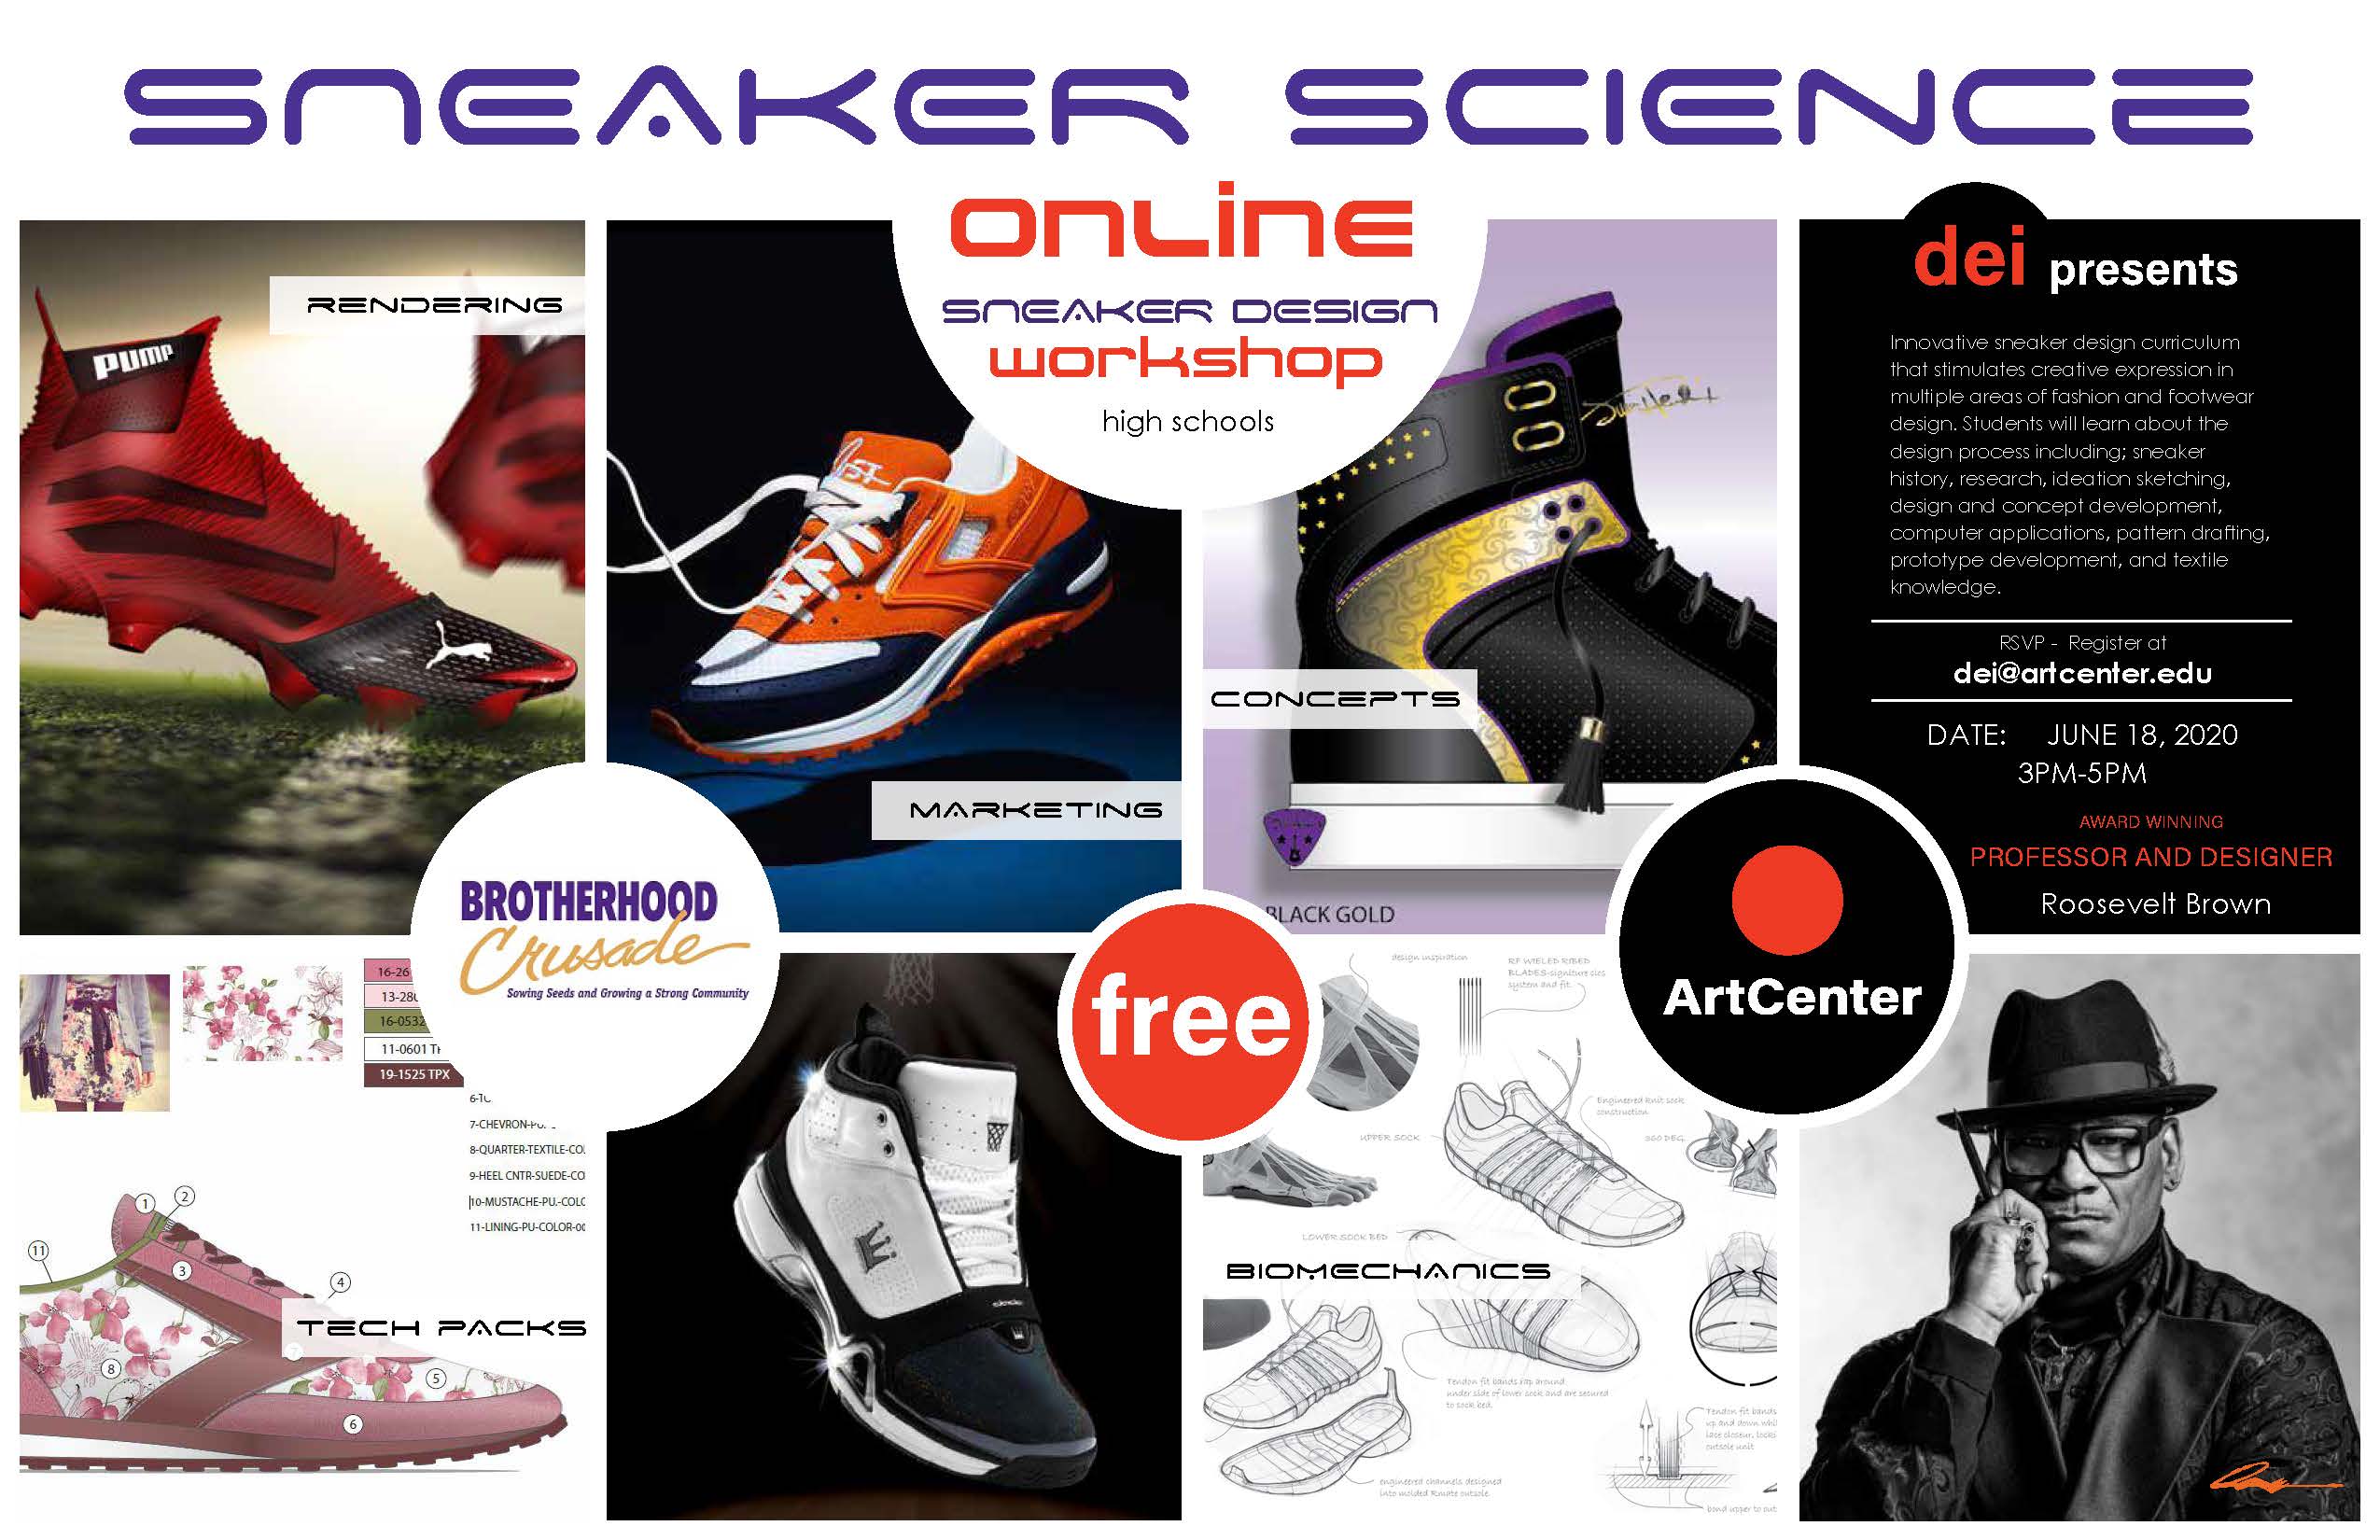 Ad for sneaker workshop.